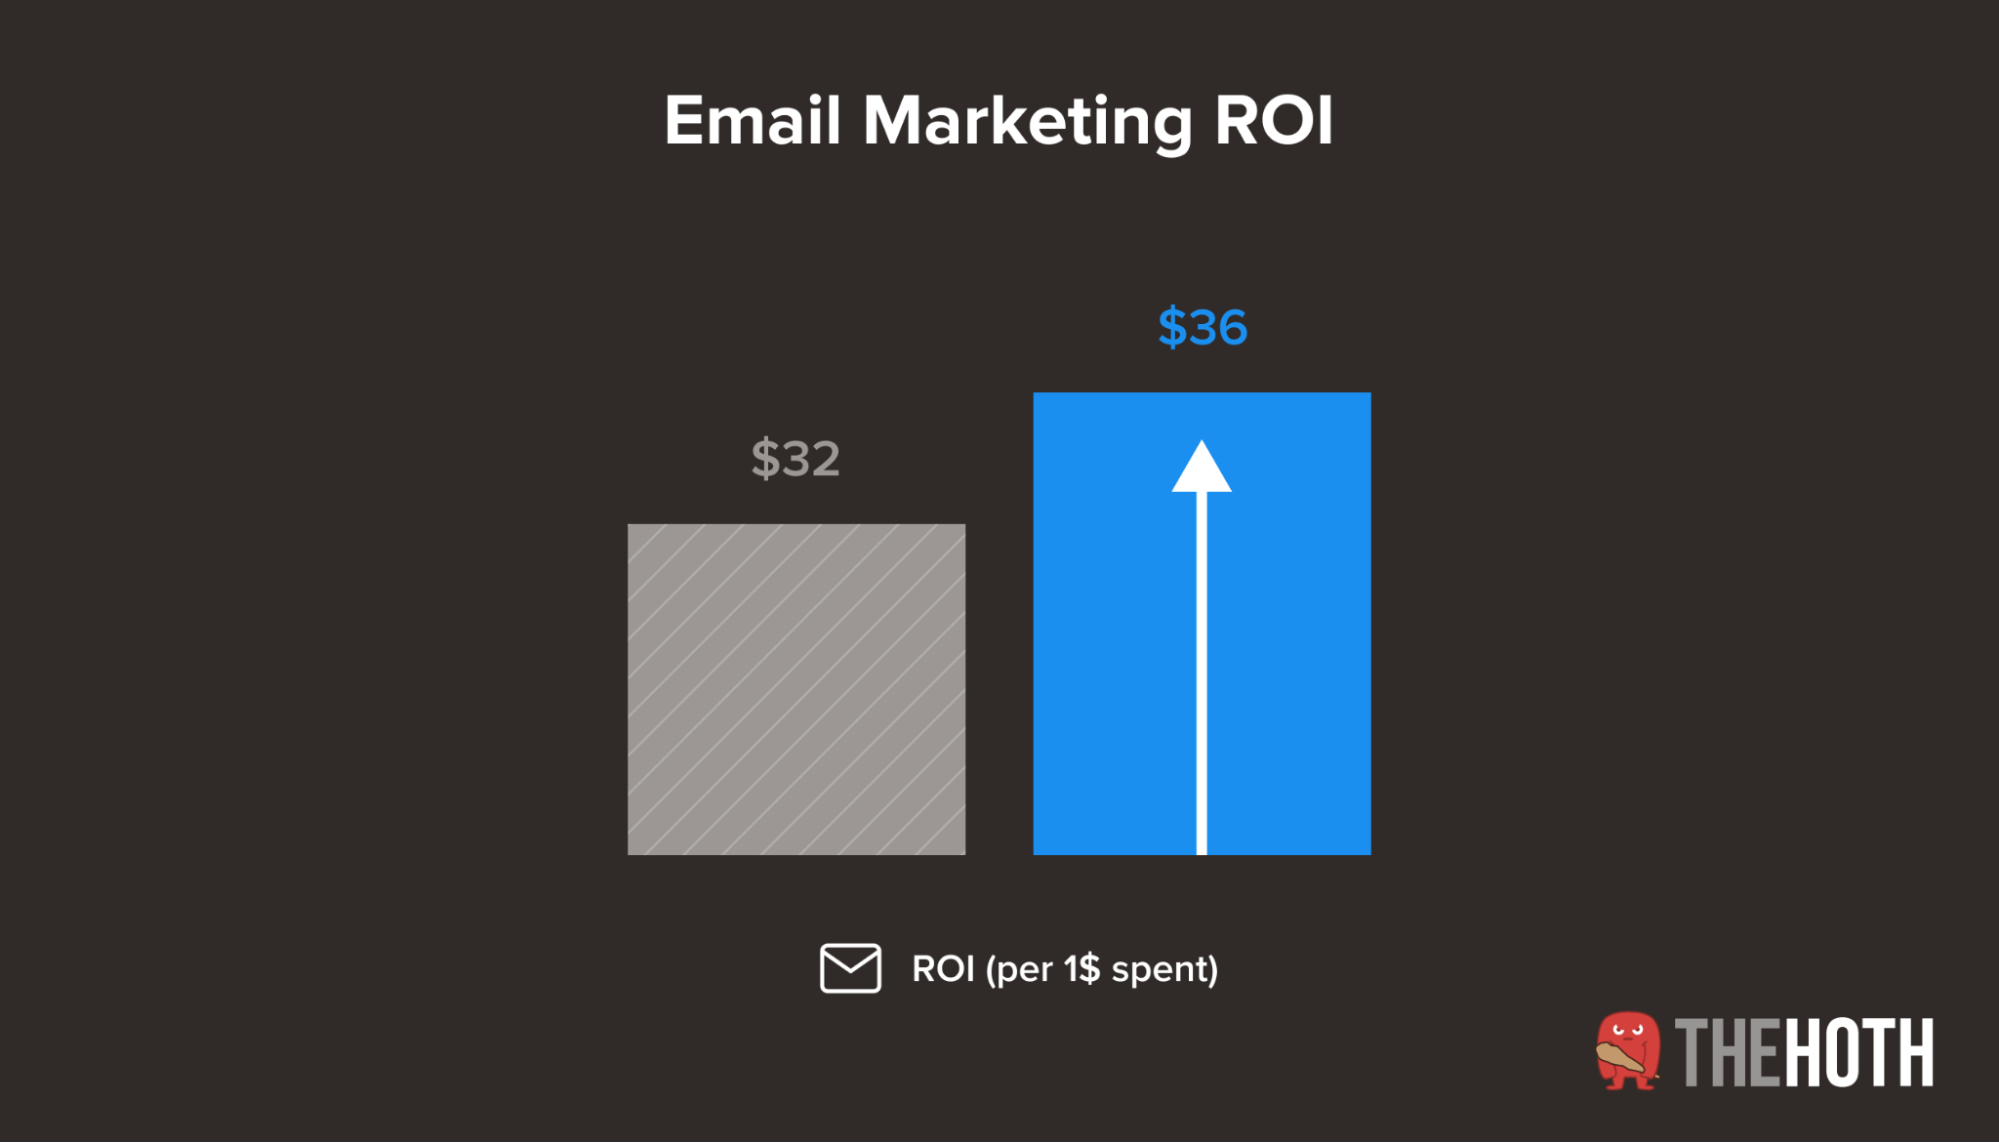 Average email marketing ROI